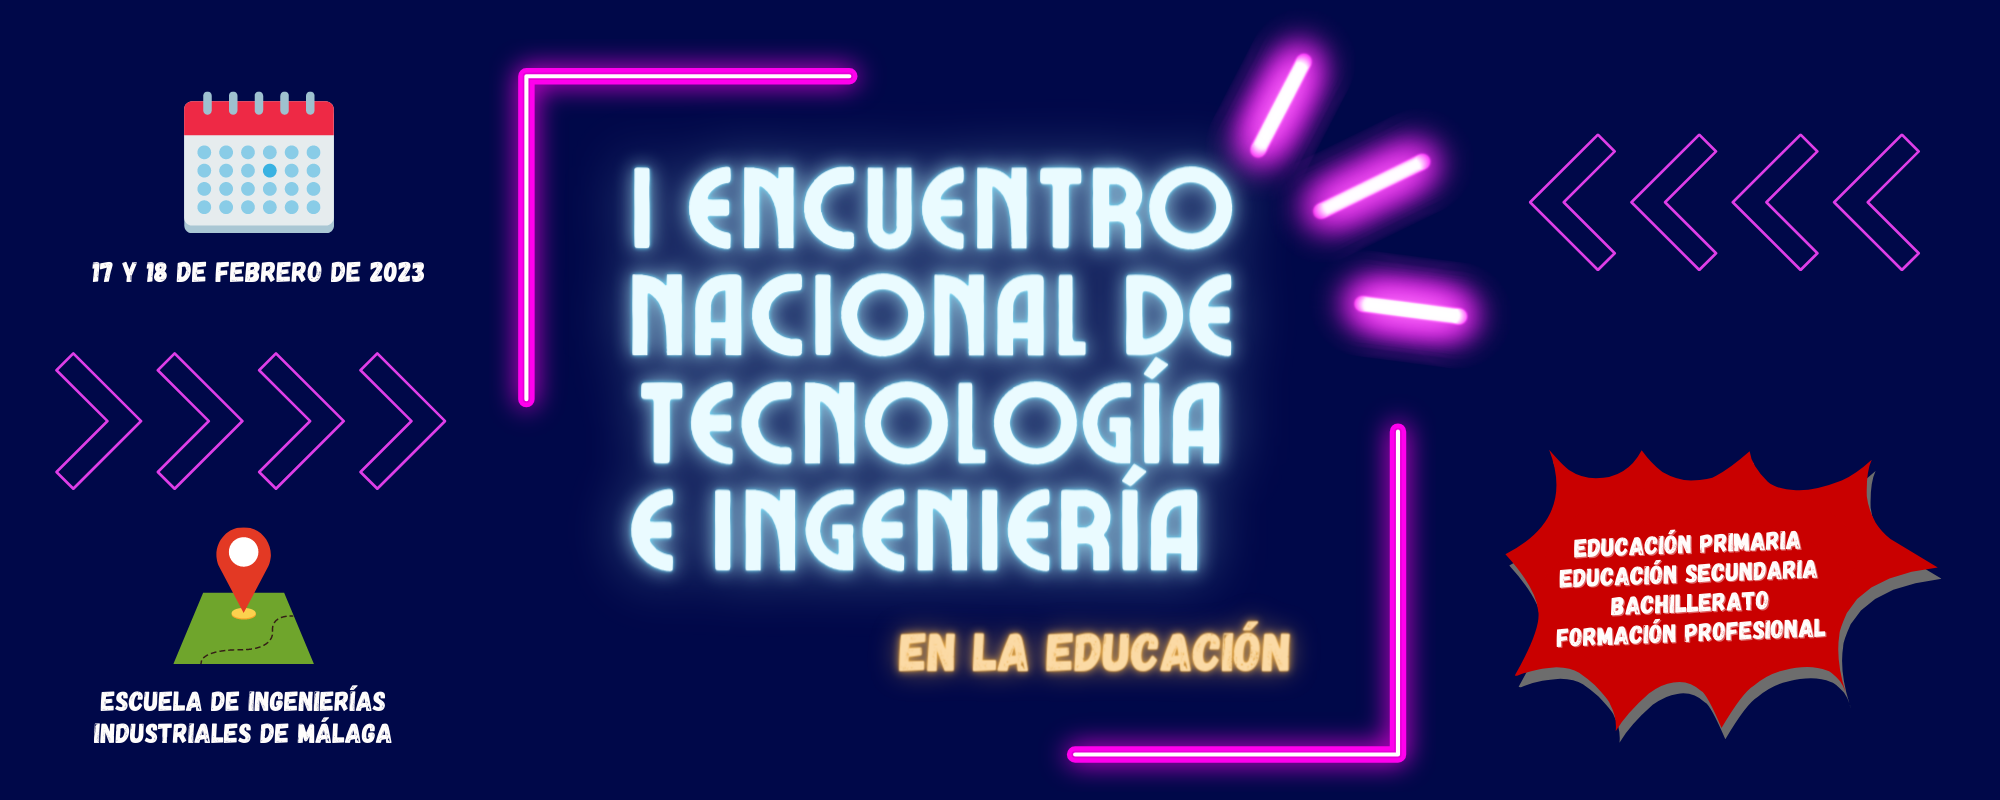 I ENCUENTRO NACIONAL DE TECNOLOGÍA E INGENIERÍA EN LA EDUCACIÓN